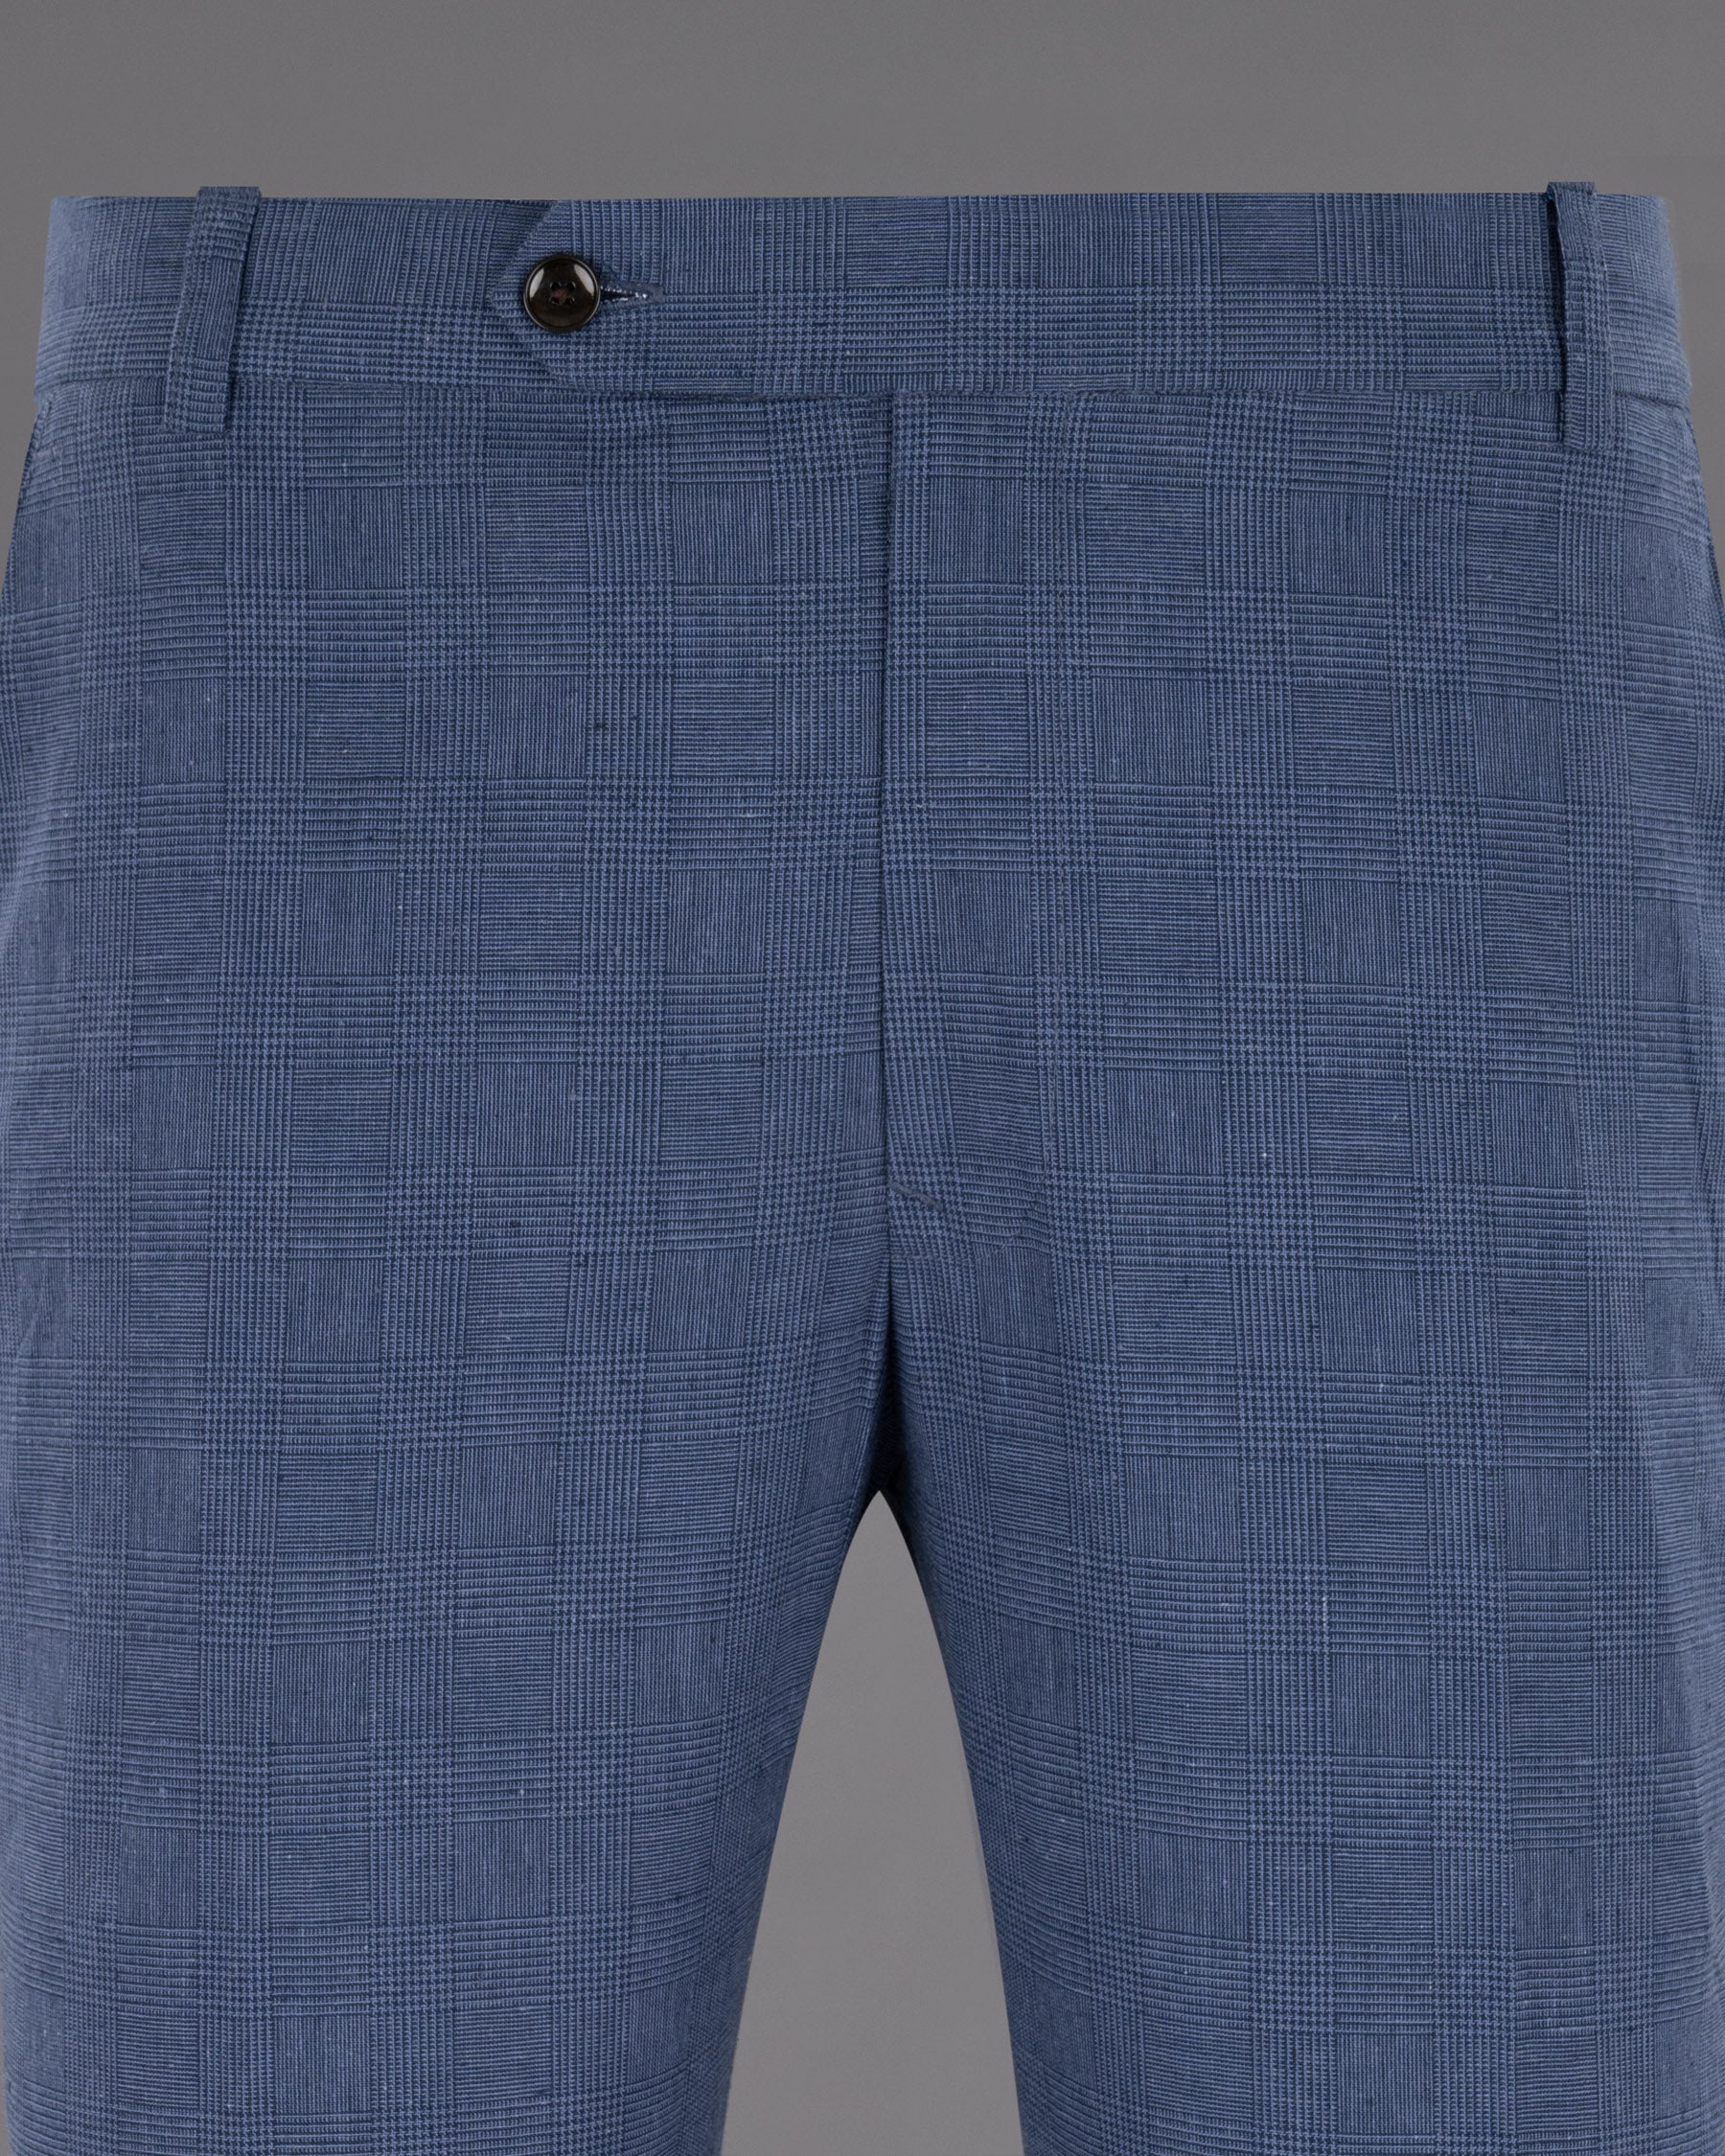 Fiord Blue Subtle Plaid Premium Cotton Pant T1229-28, T1229-30, T1229-32, T1229-34, T1229-36, T1229-38, T1229-40, T1229-42, T1229-44